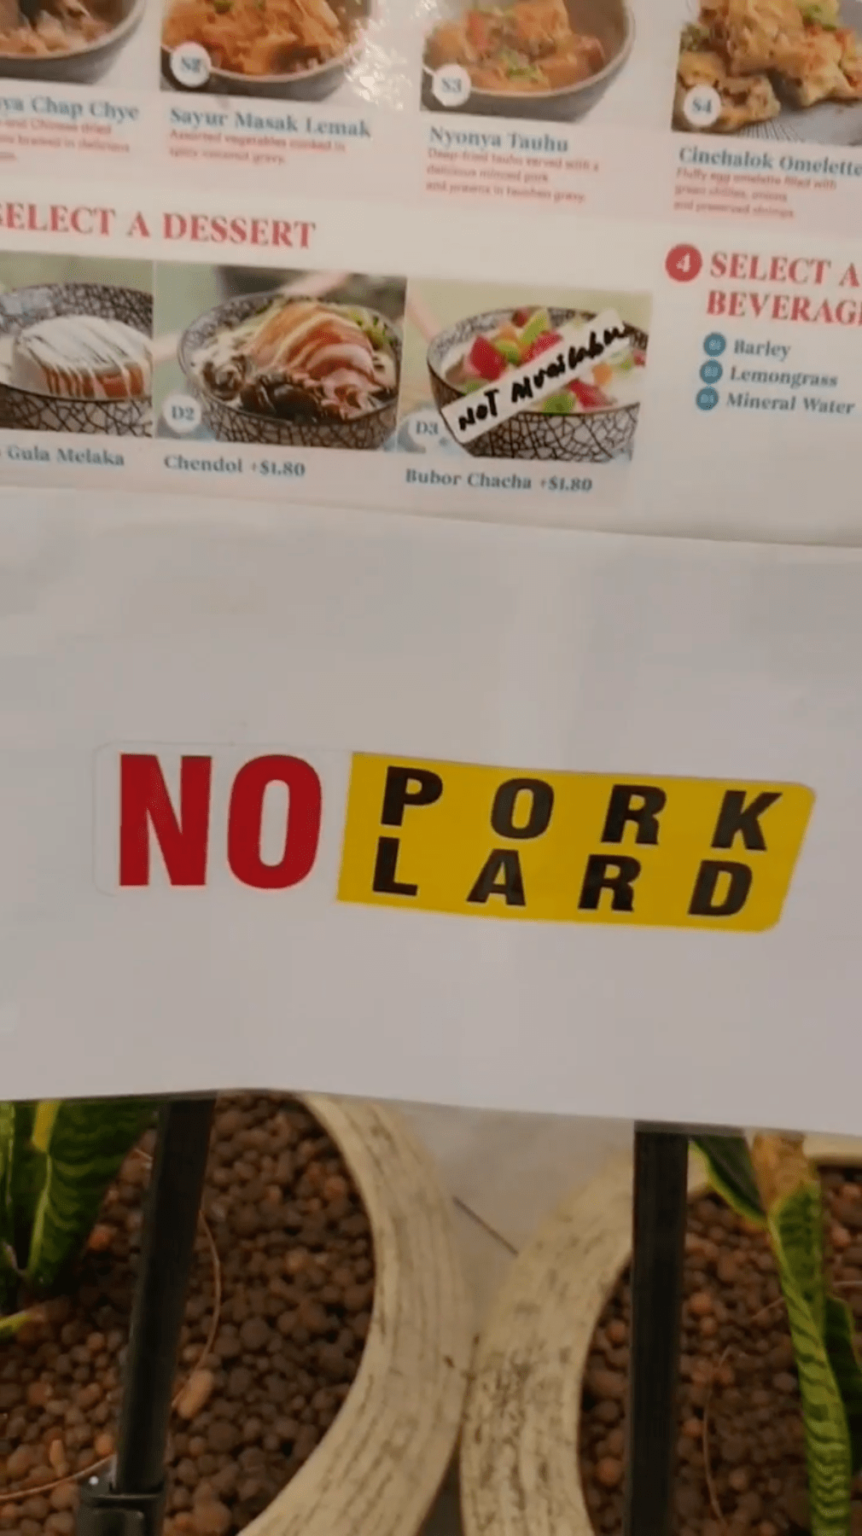 No Pork Lard 862x1536 